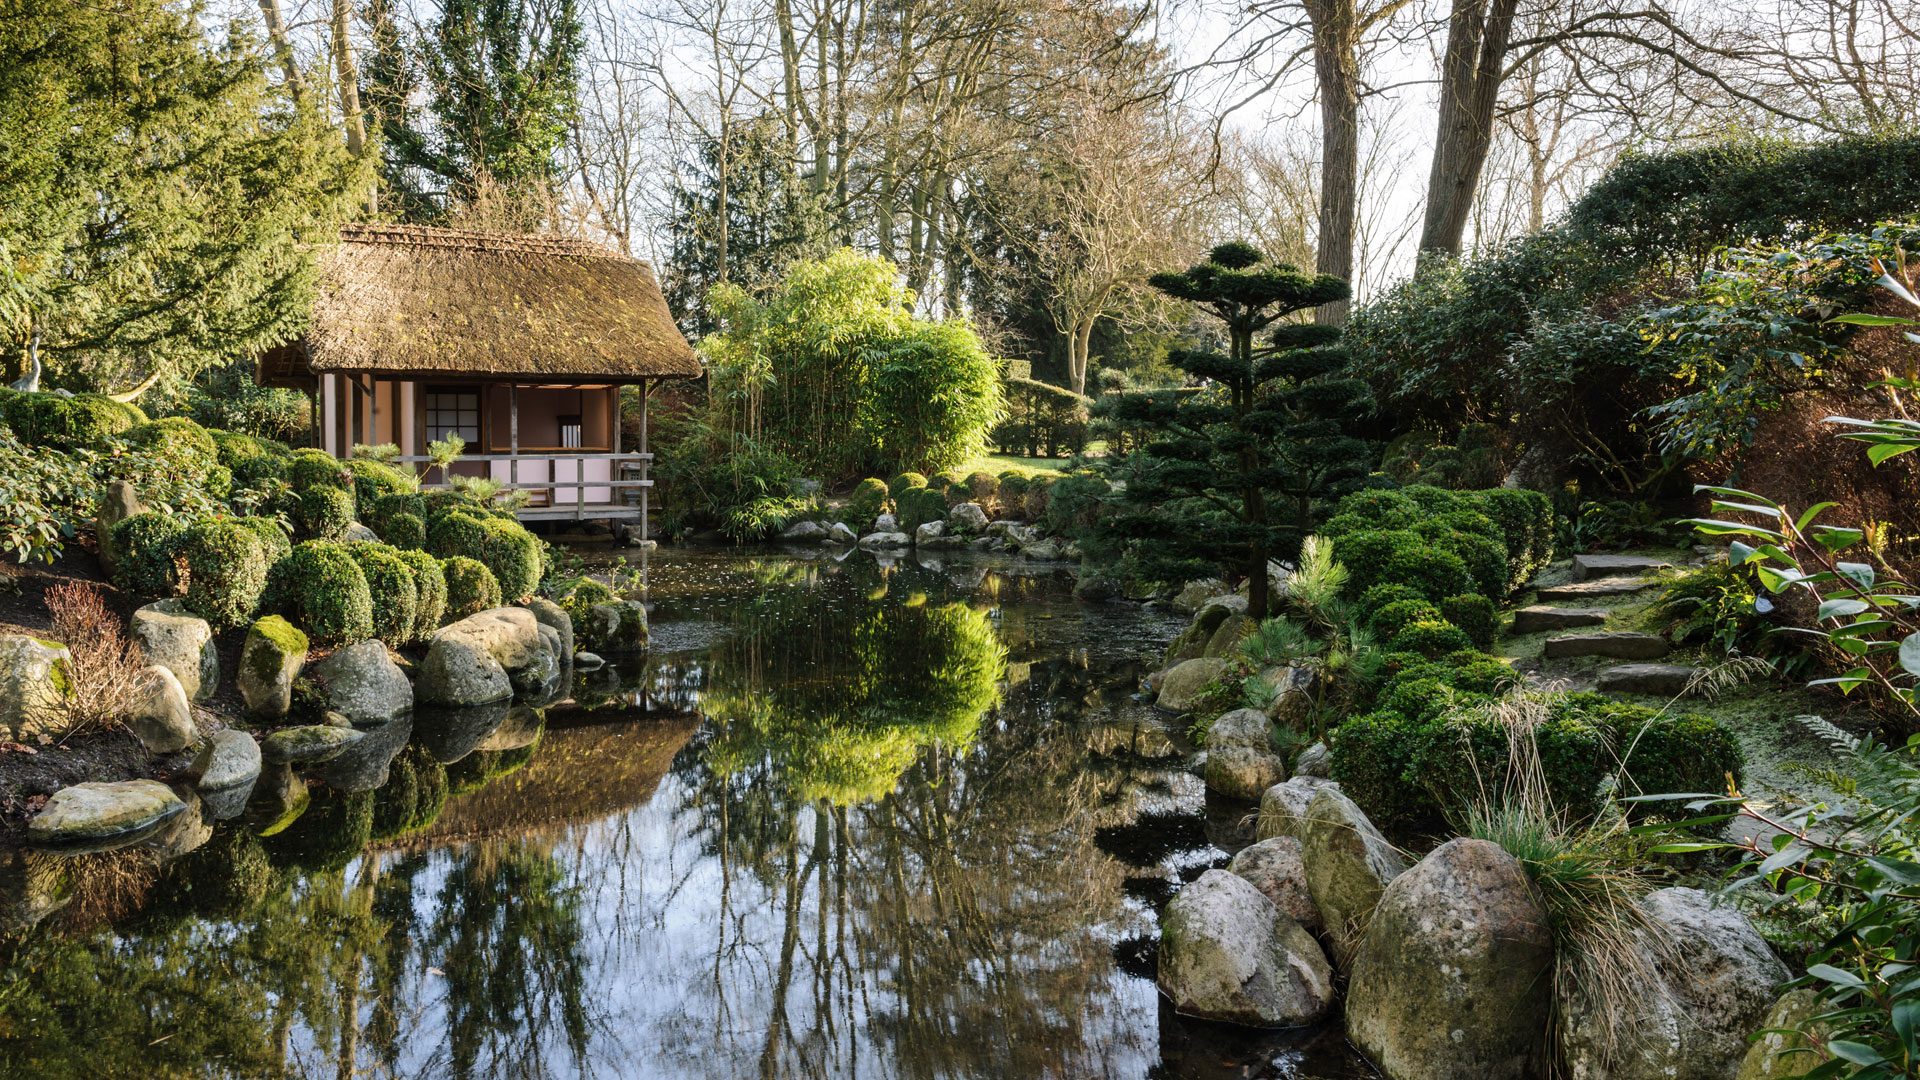 Belmond Le Manoir aux Quat'Saisons Japanese garden